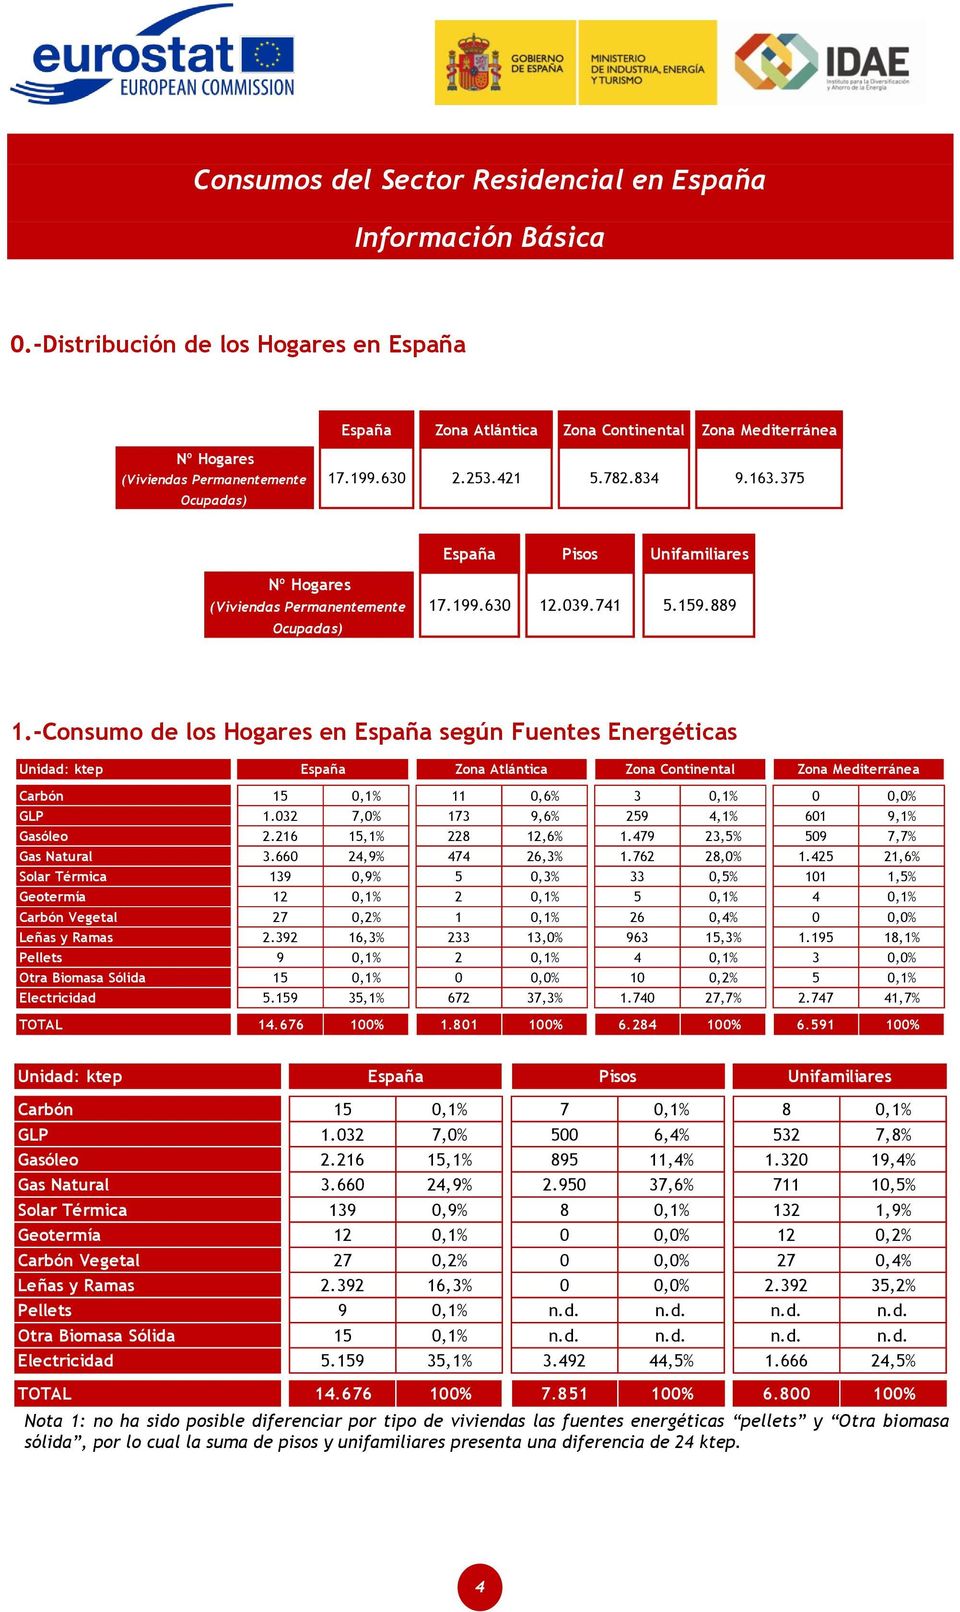 -Consumo de los Hogares en según Fuentes Energéticas Unidad: ktep Zona Atlántica Zona Continental Zona Mediterránea Carbón 15 0,1% 11 0,6% 3 0,1% 0 0,0% GLP 1.